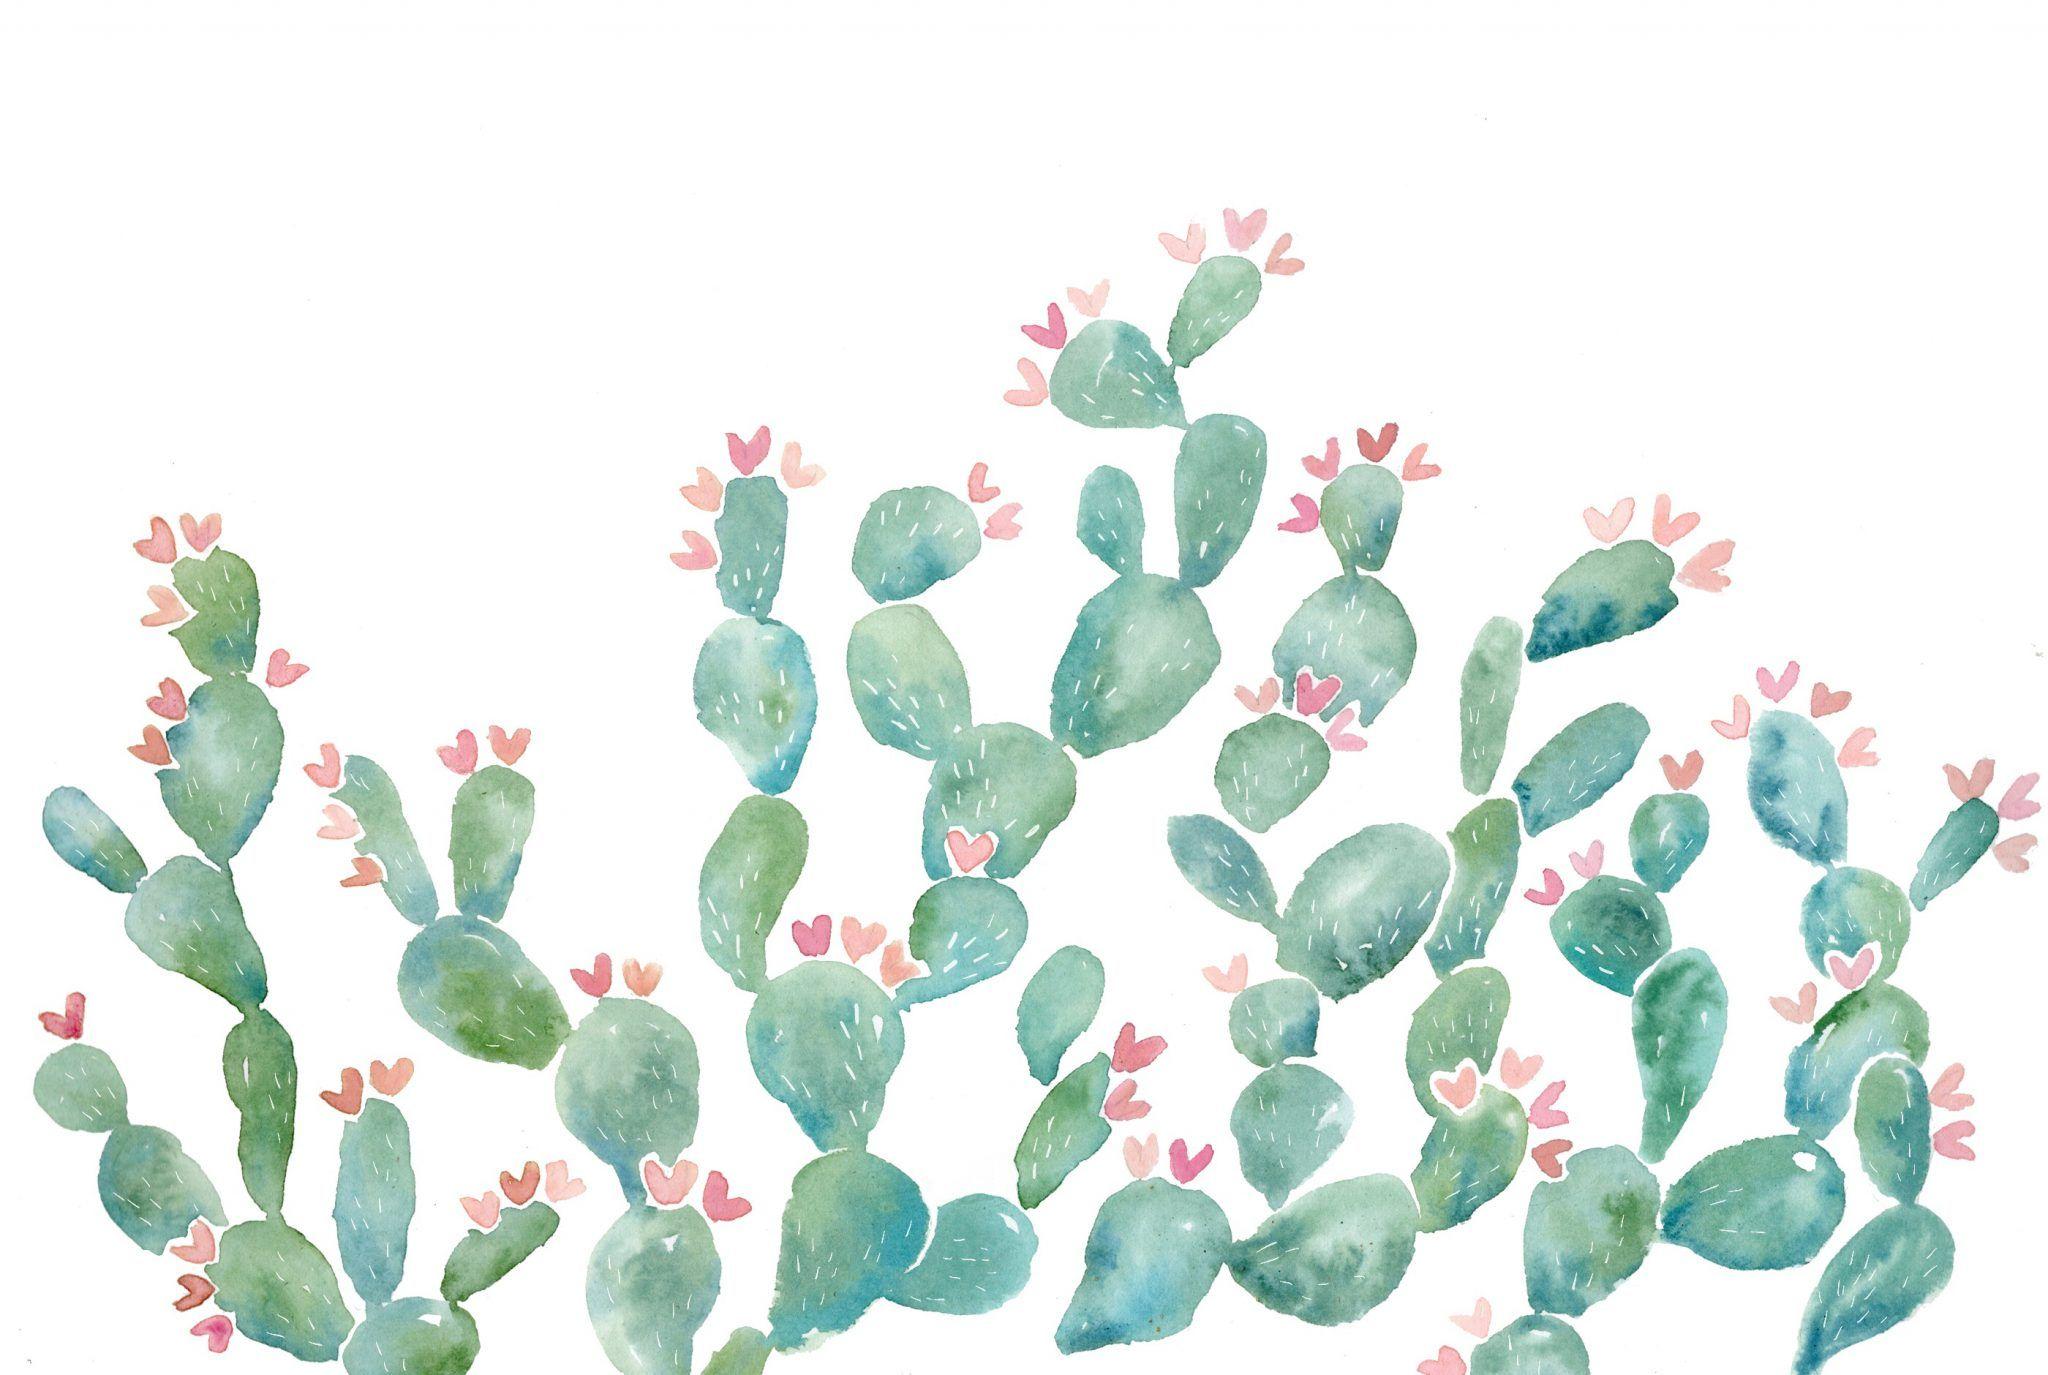 Cactus Desktop Wallpapers - Top Free Cactus Desktop Backgrounds ...